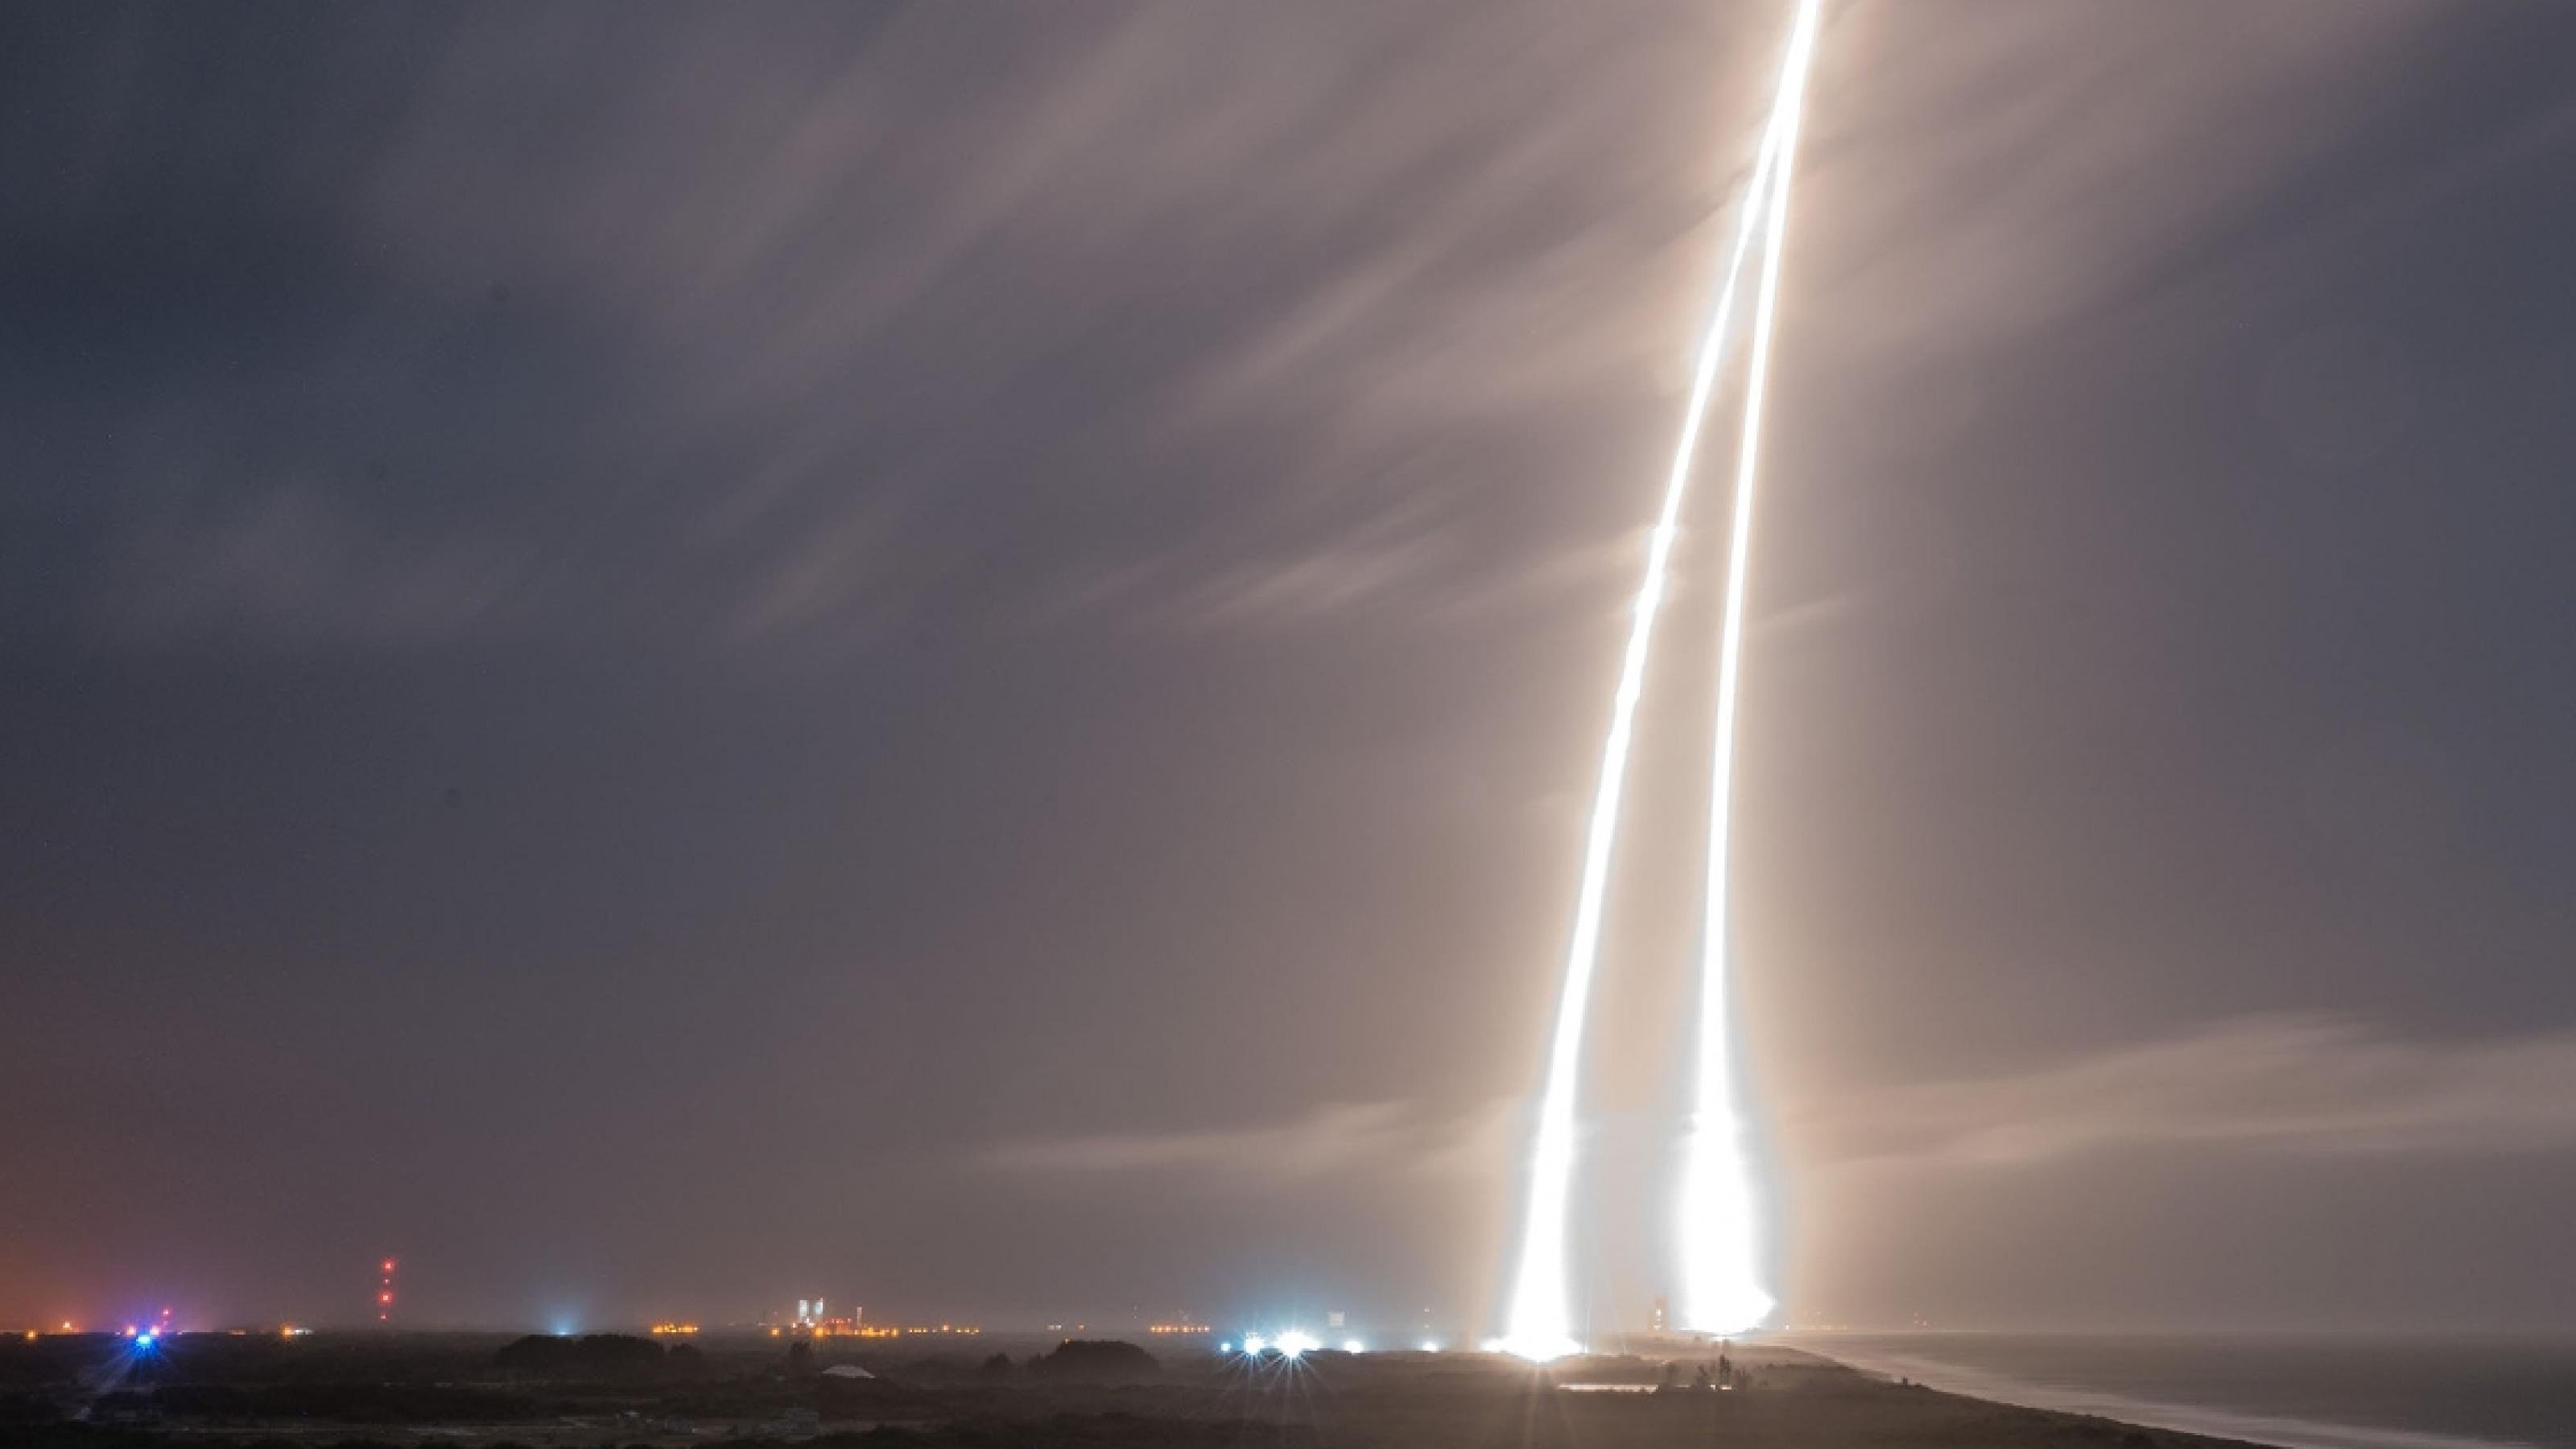 Die Langzeitaufnahme zeigt einen spitzen zweiseitigen Lichtstrahl am Himmel, der entstand, als eine Falcon-Rakete startete und später die Erststufe wieder landete.